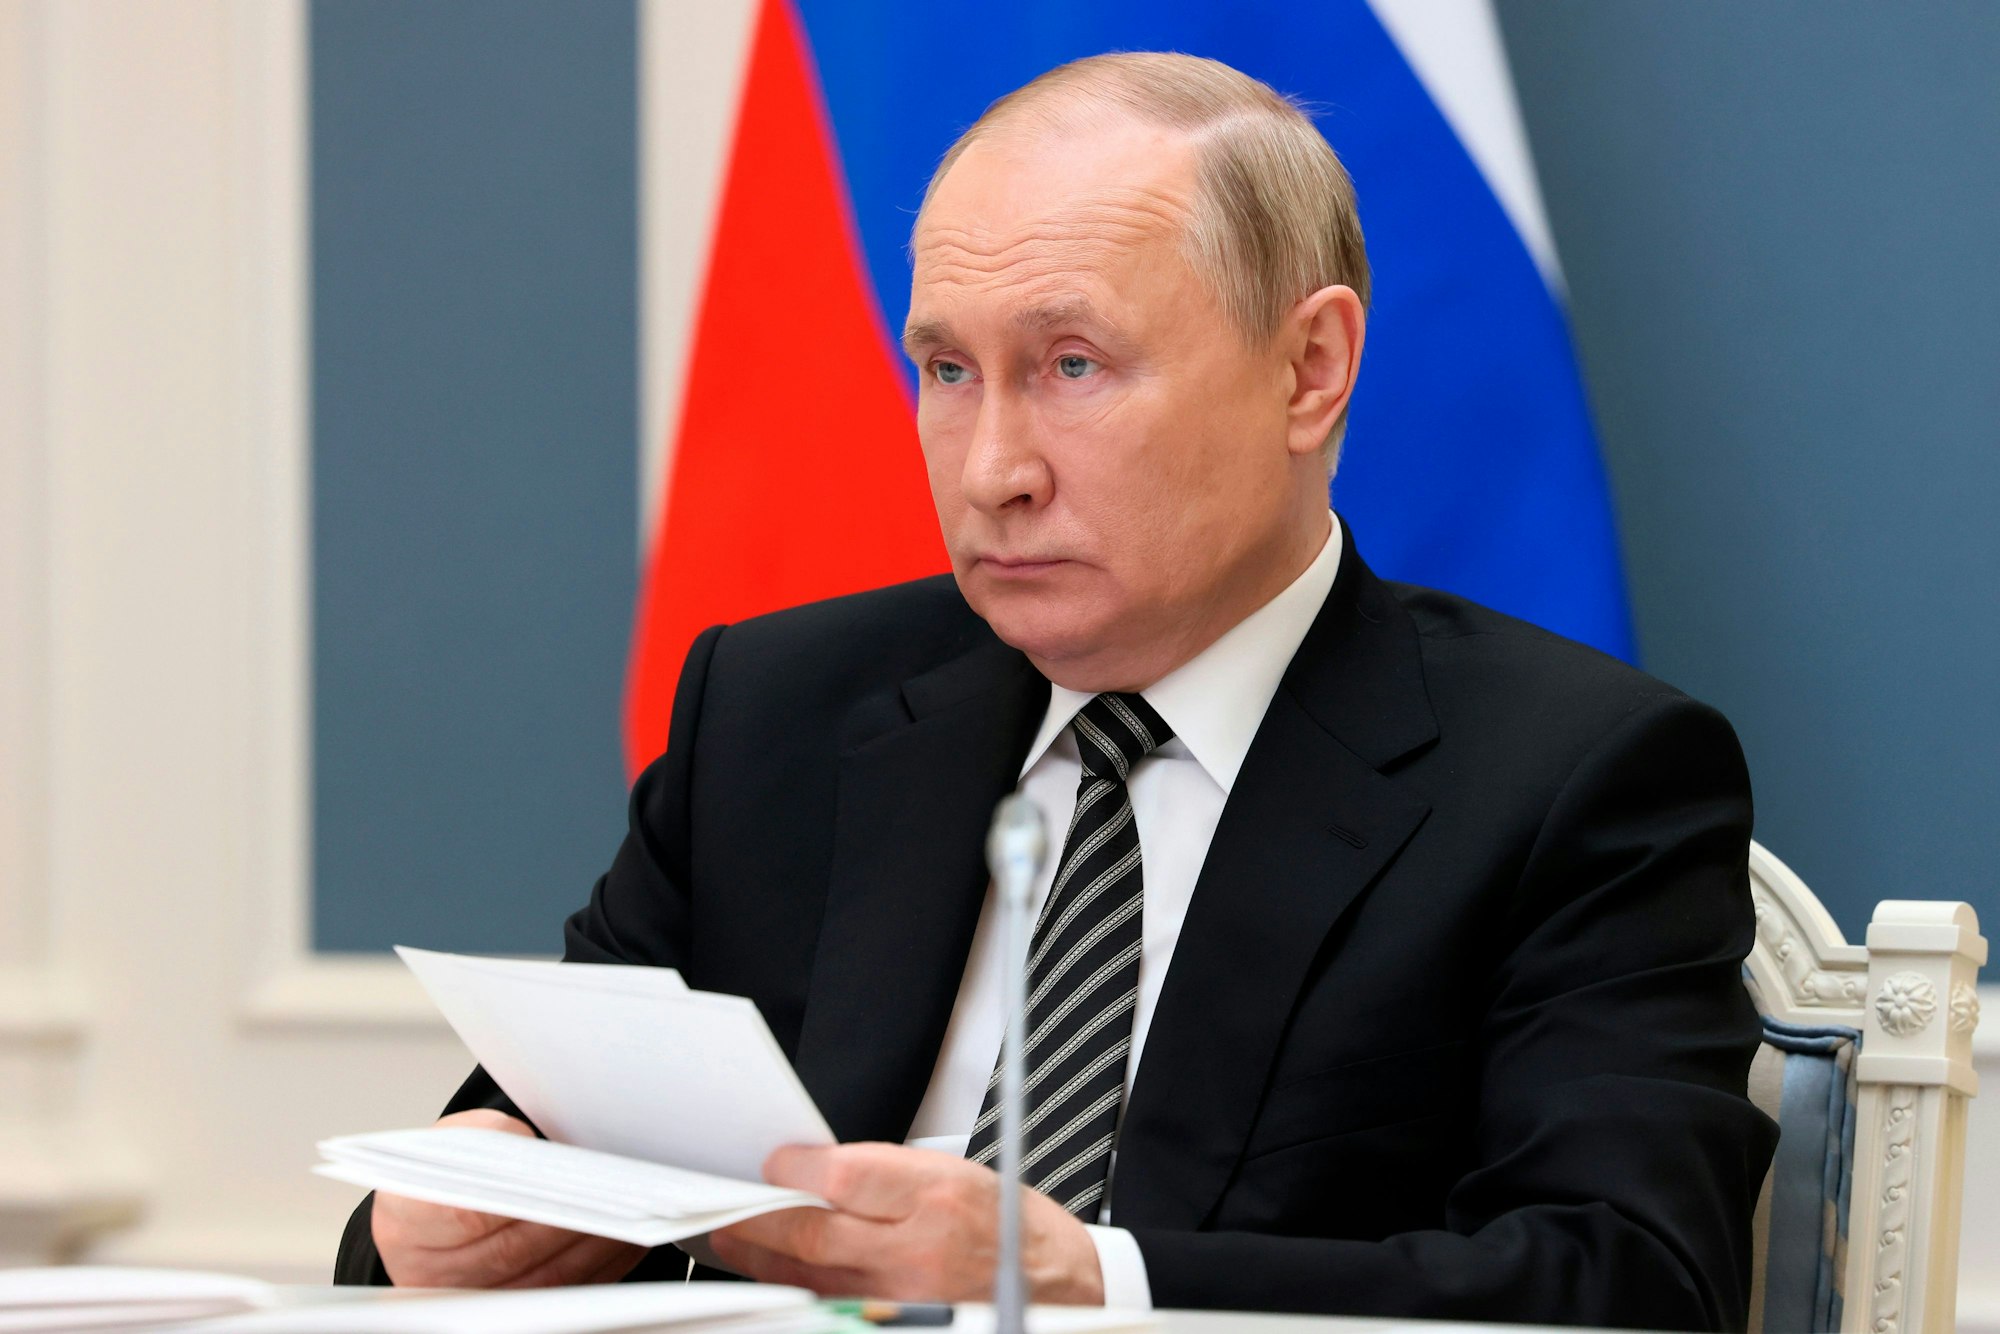 Wladimir Putin, Präsident von Russland, nimmt an einer Sitzung des Obersten Eurasischen Wirtschaftsrates per Videokonferenz teil.